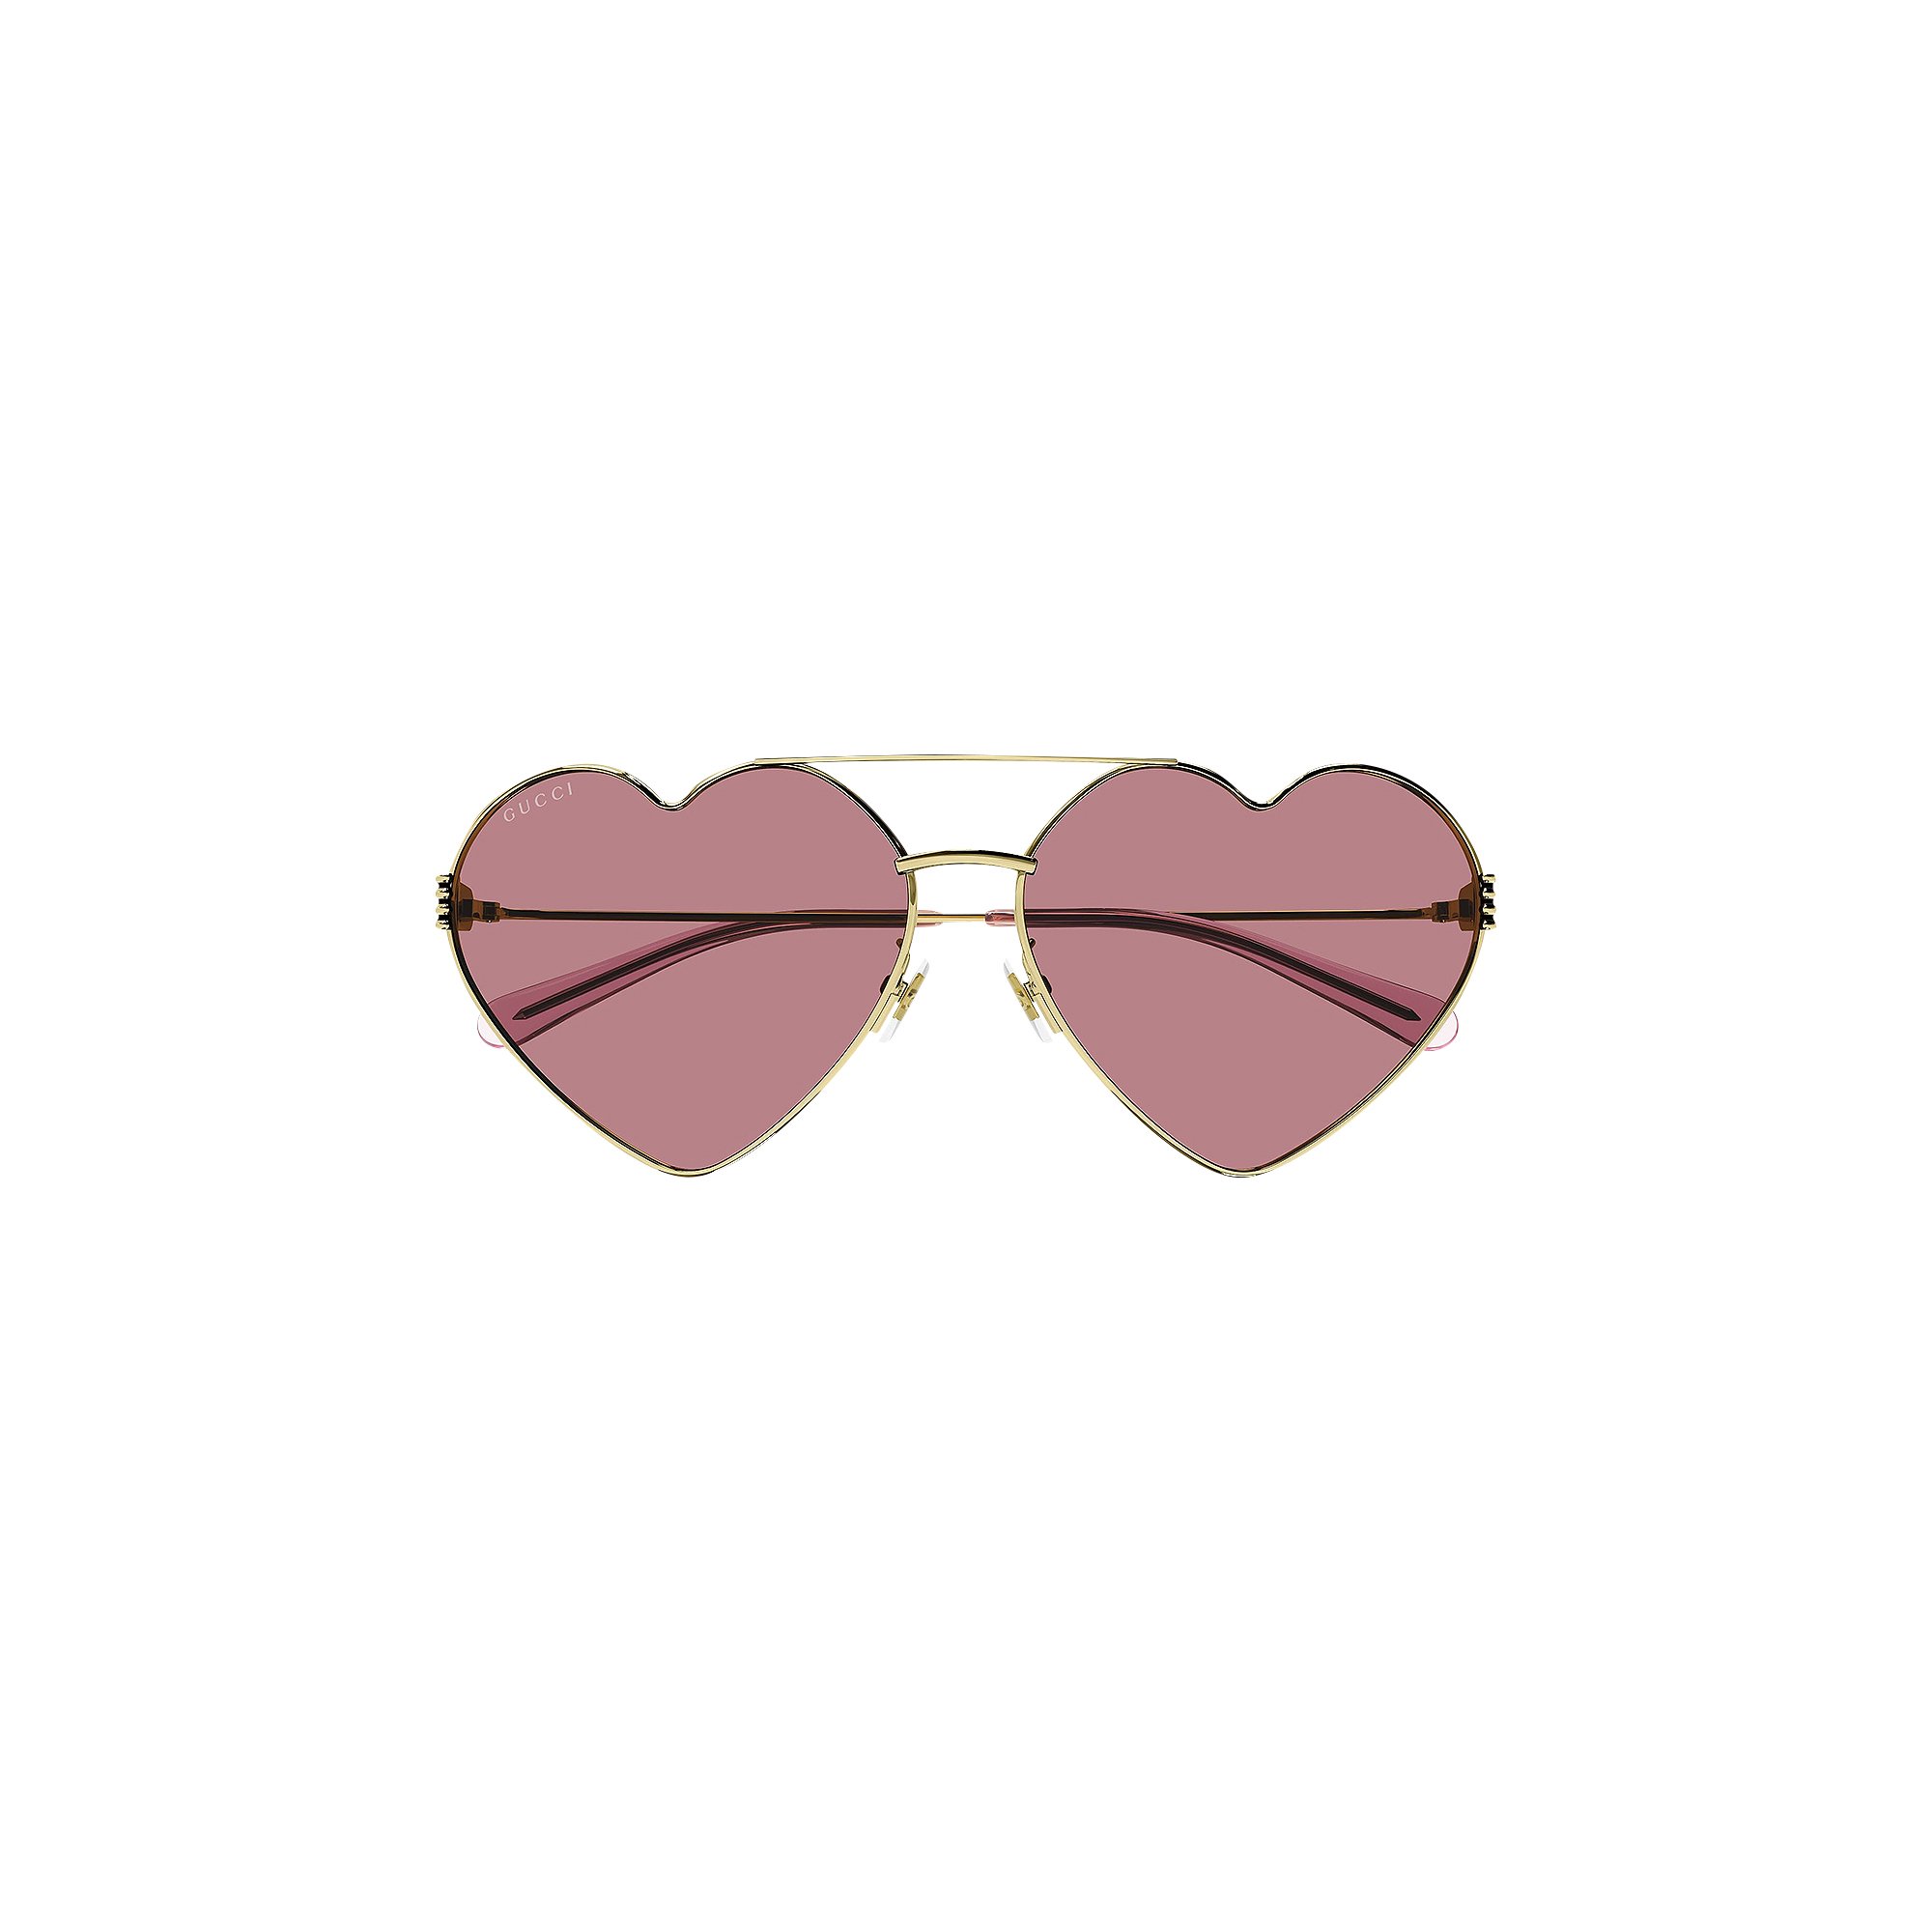 Солнцезащитные очки Gucci в форме сердца, золотистые lisa smith золотистые серьги в форме разбитого сердца